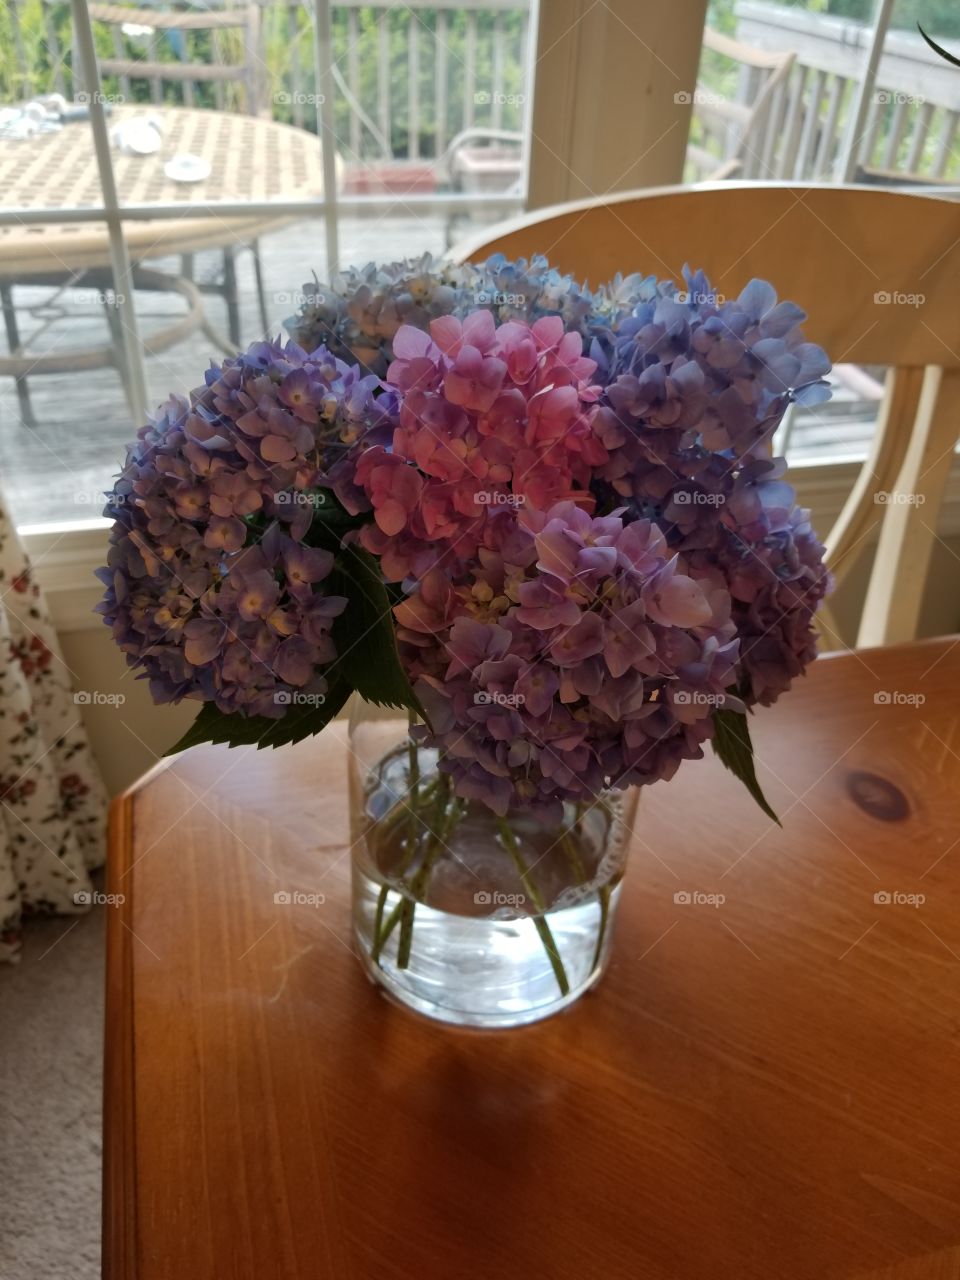 hydrangeas in vase